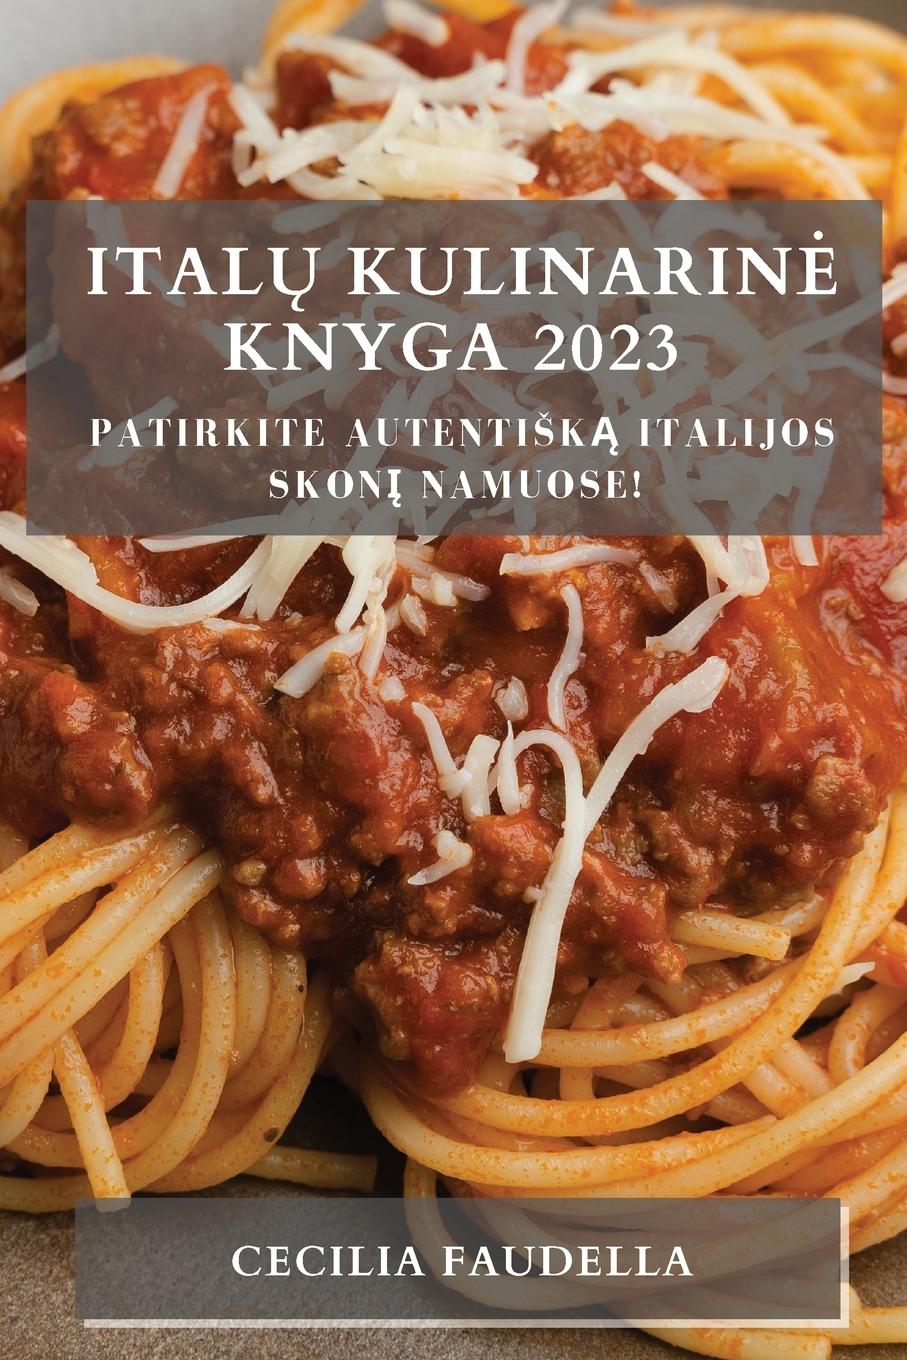 Kniha Ital? Kulinarin? Knyga 2023 